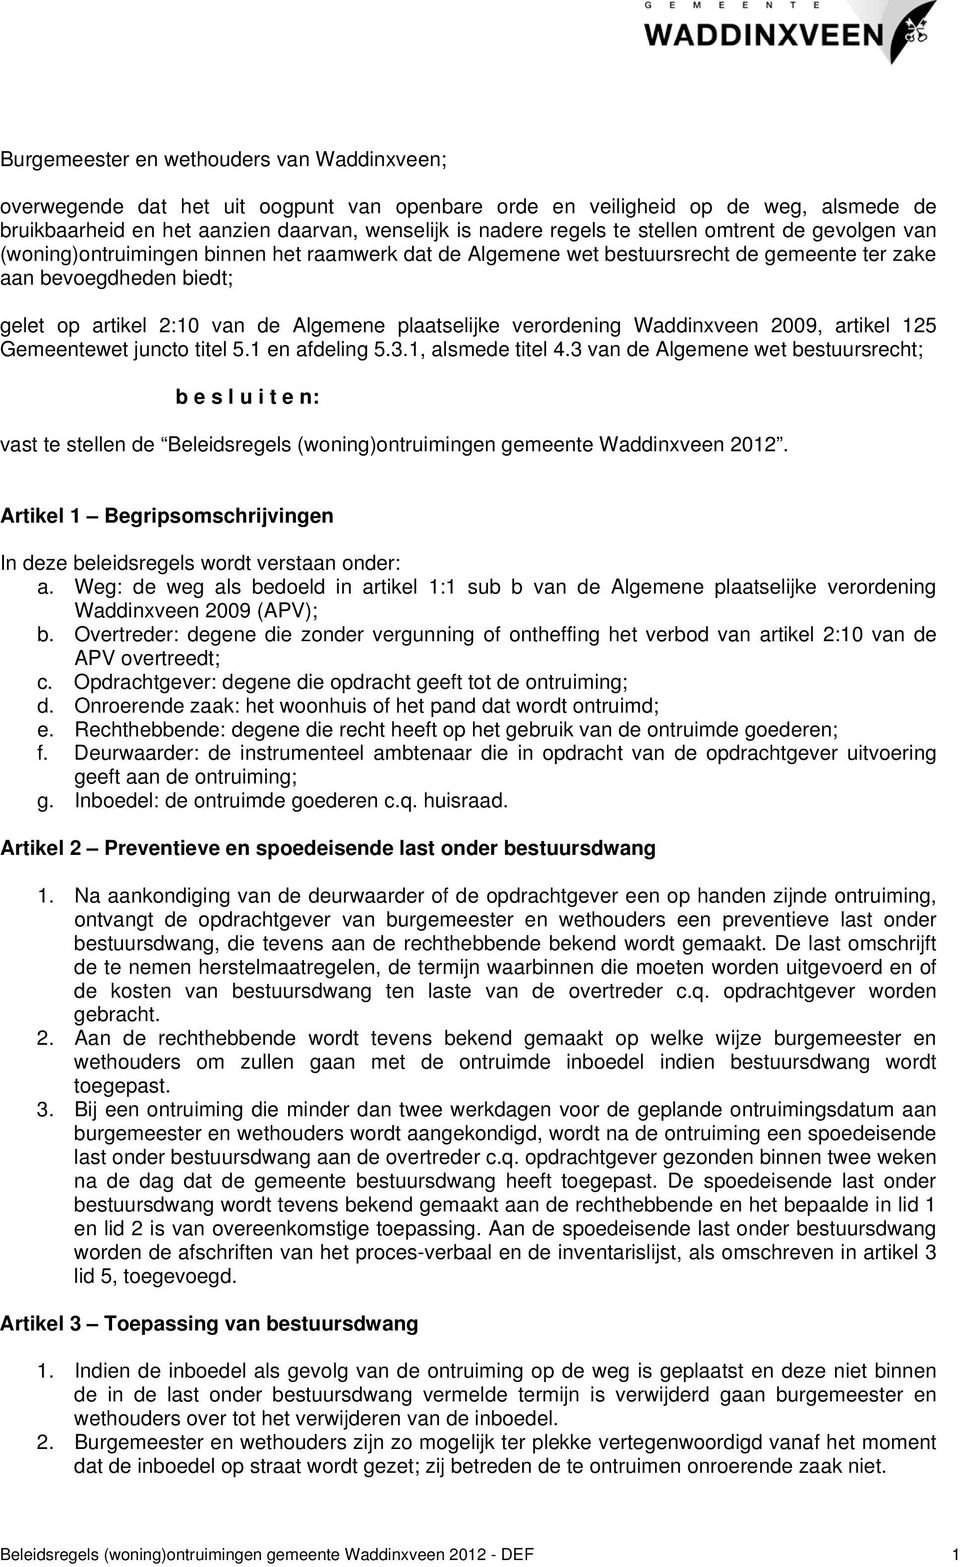 plaatselijke verordening Waddinxveen 2009, artikel 125 Gemeentewet juncto titel 5.1 en afdeling 5.3.1, alsmede titel 4.